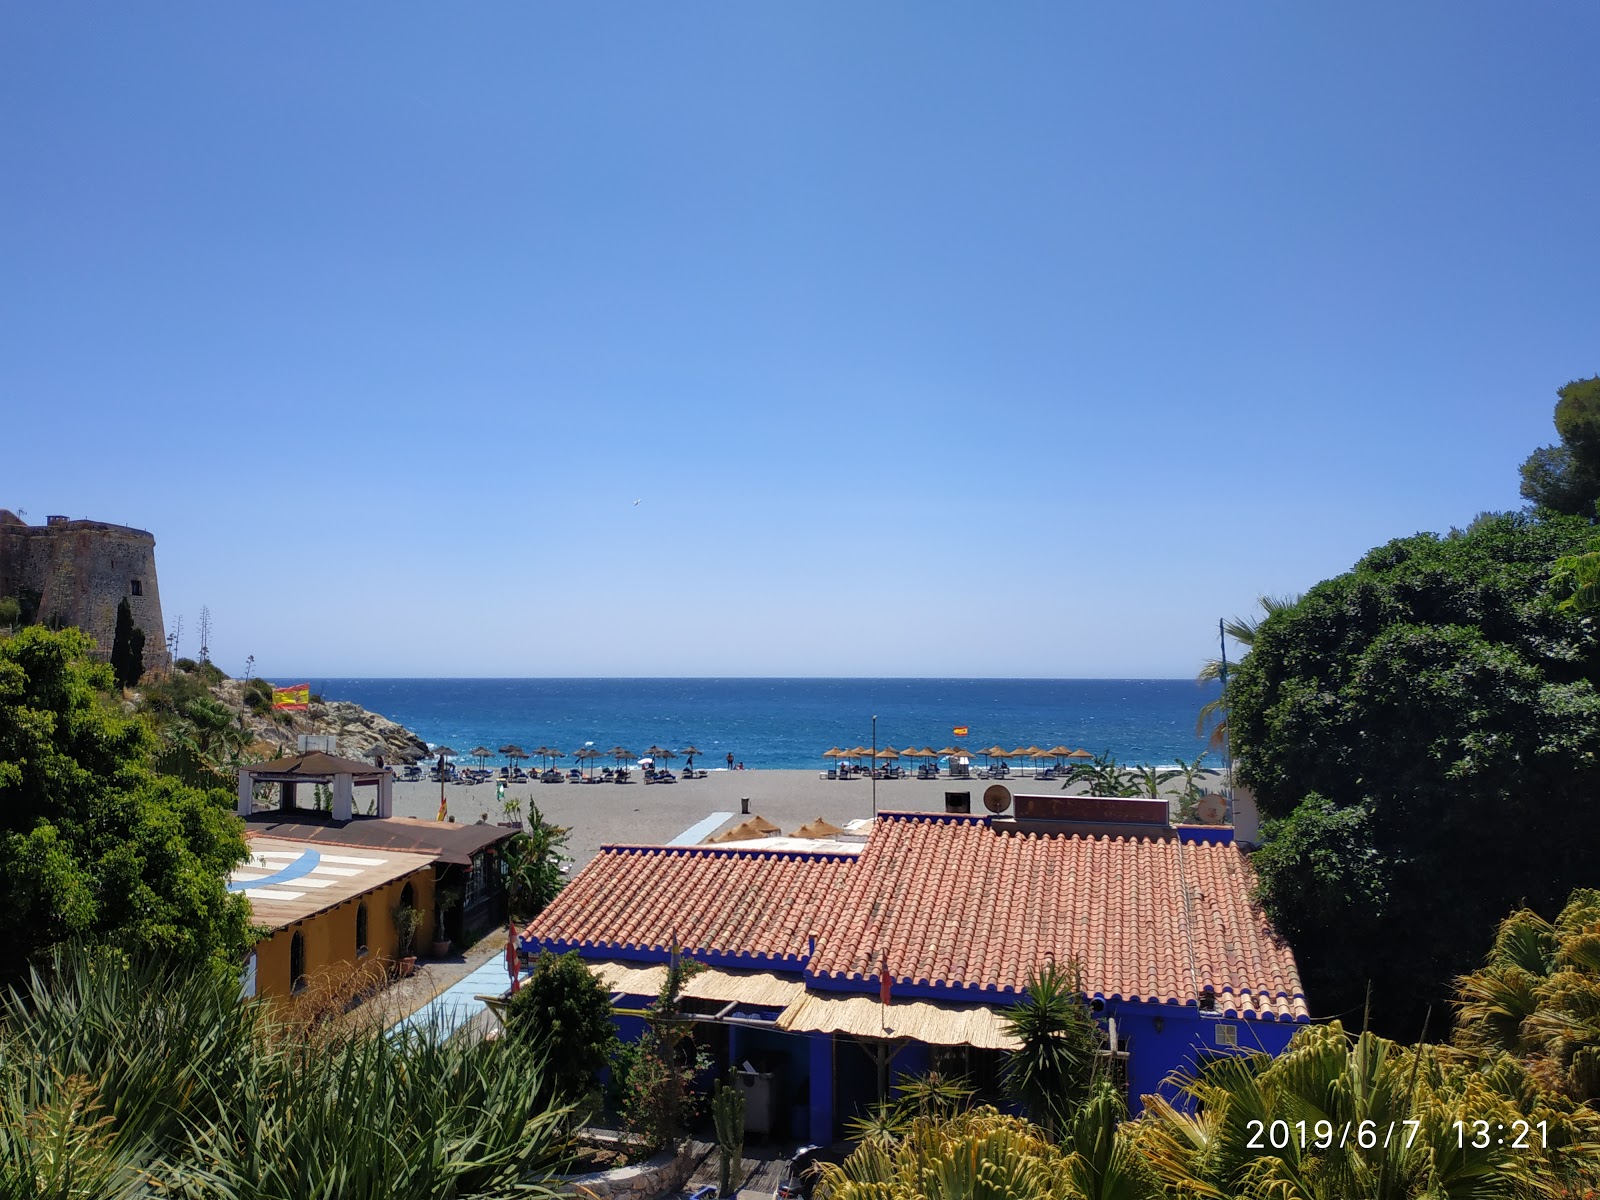 Playa de Velilla'in fotoğrafı mavi saf su yüzey ile